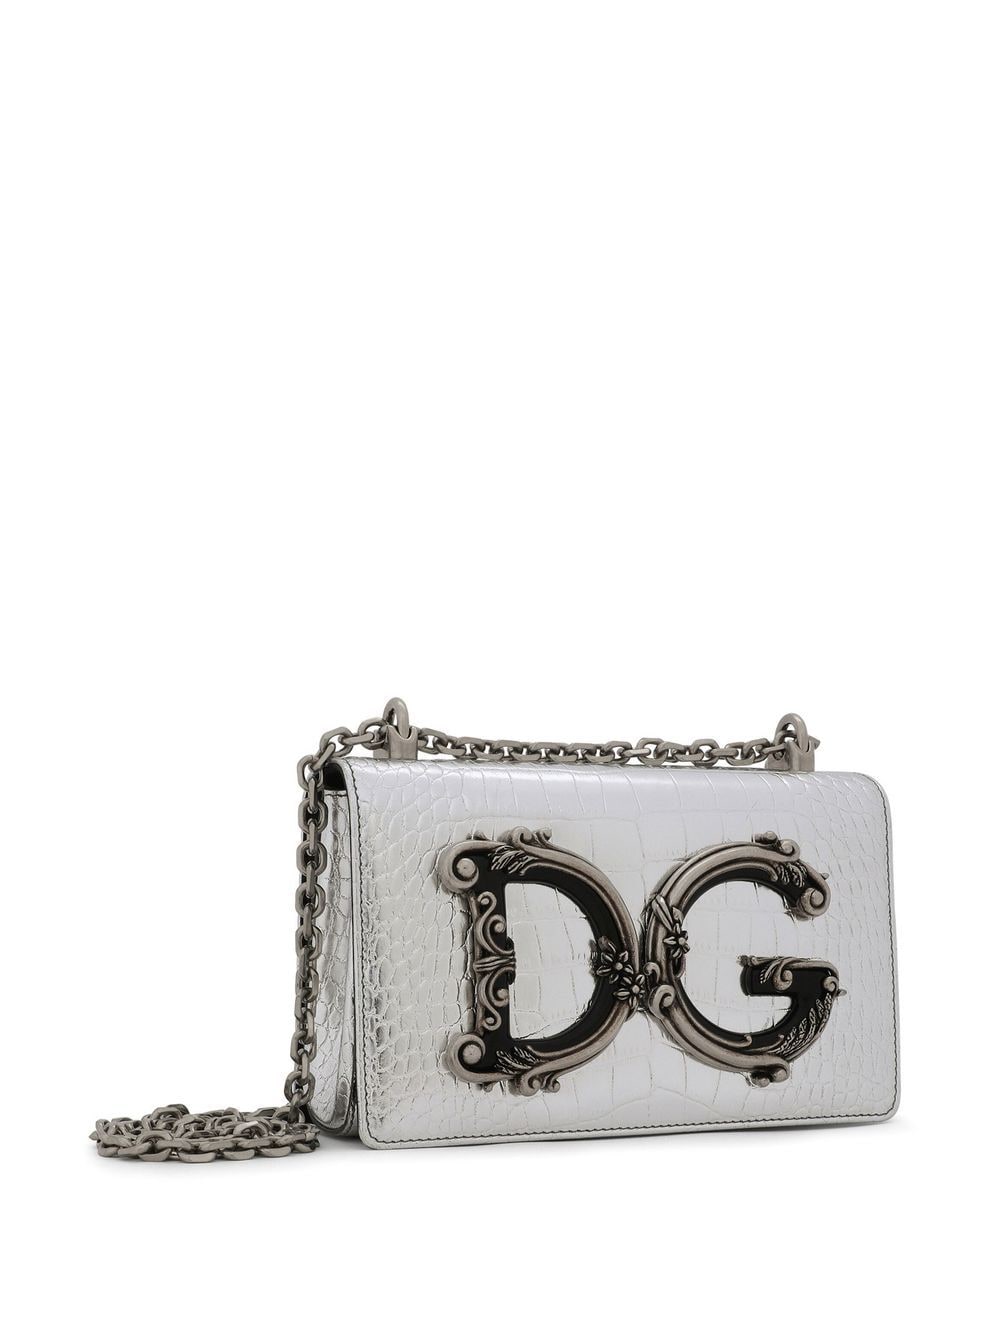 Dolce & Gabbana DG Girls schoudertas met krokodillen-reliëf Grijs